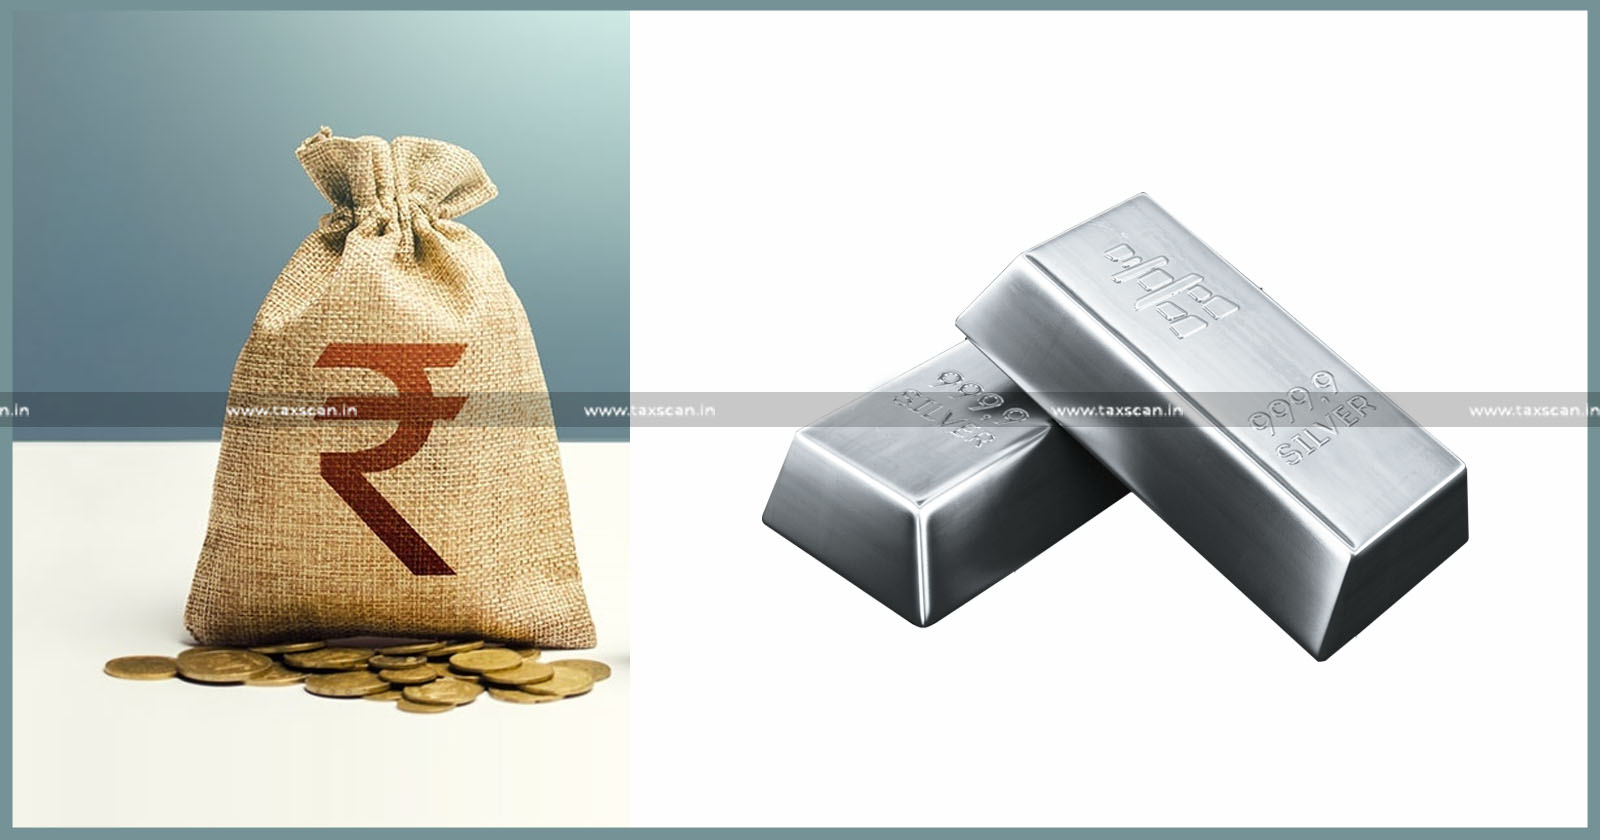 Silver- Bars - Cash - liable - Seized - CGST-Act-Delhi- HC - Seized-Cash - Silver-Bars-TAXSCAN